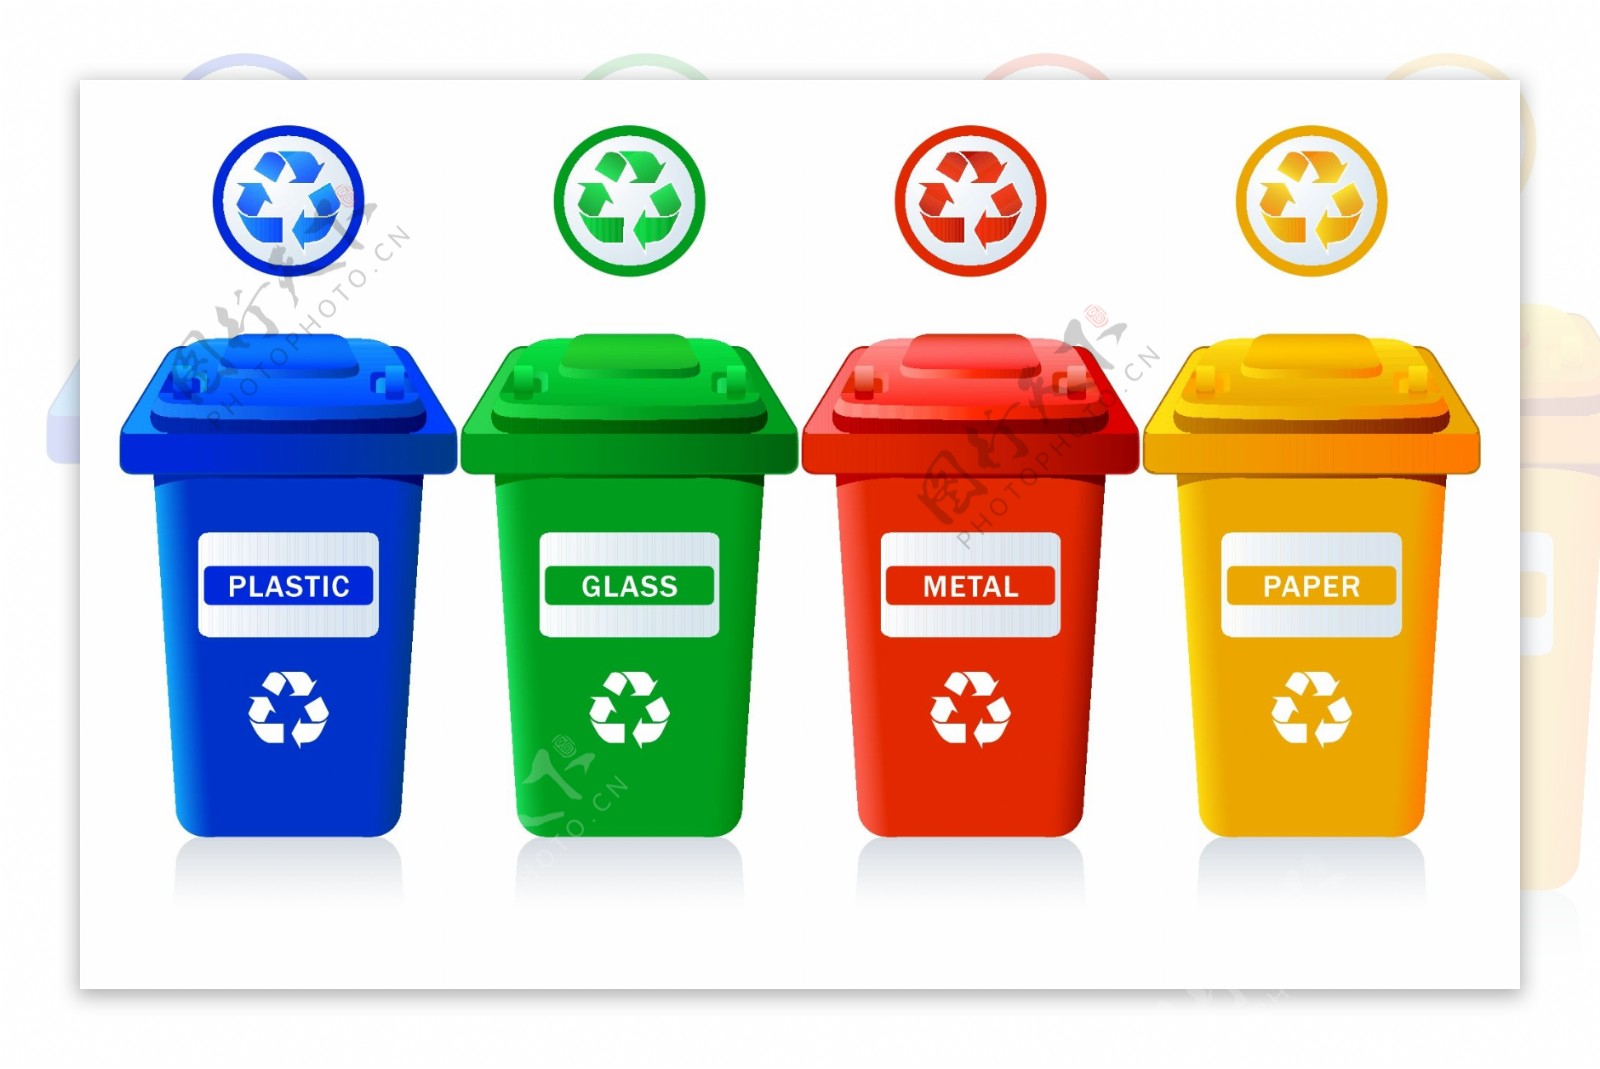 資源回收分類桶